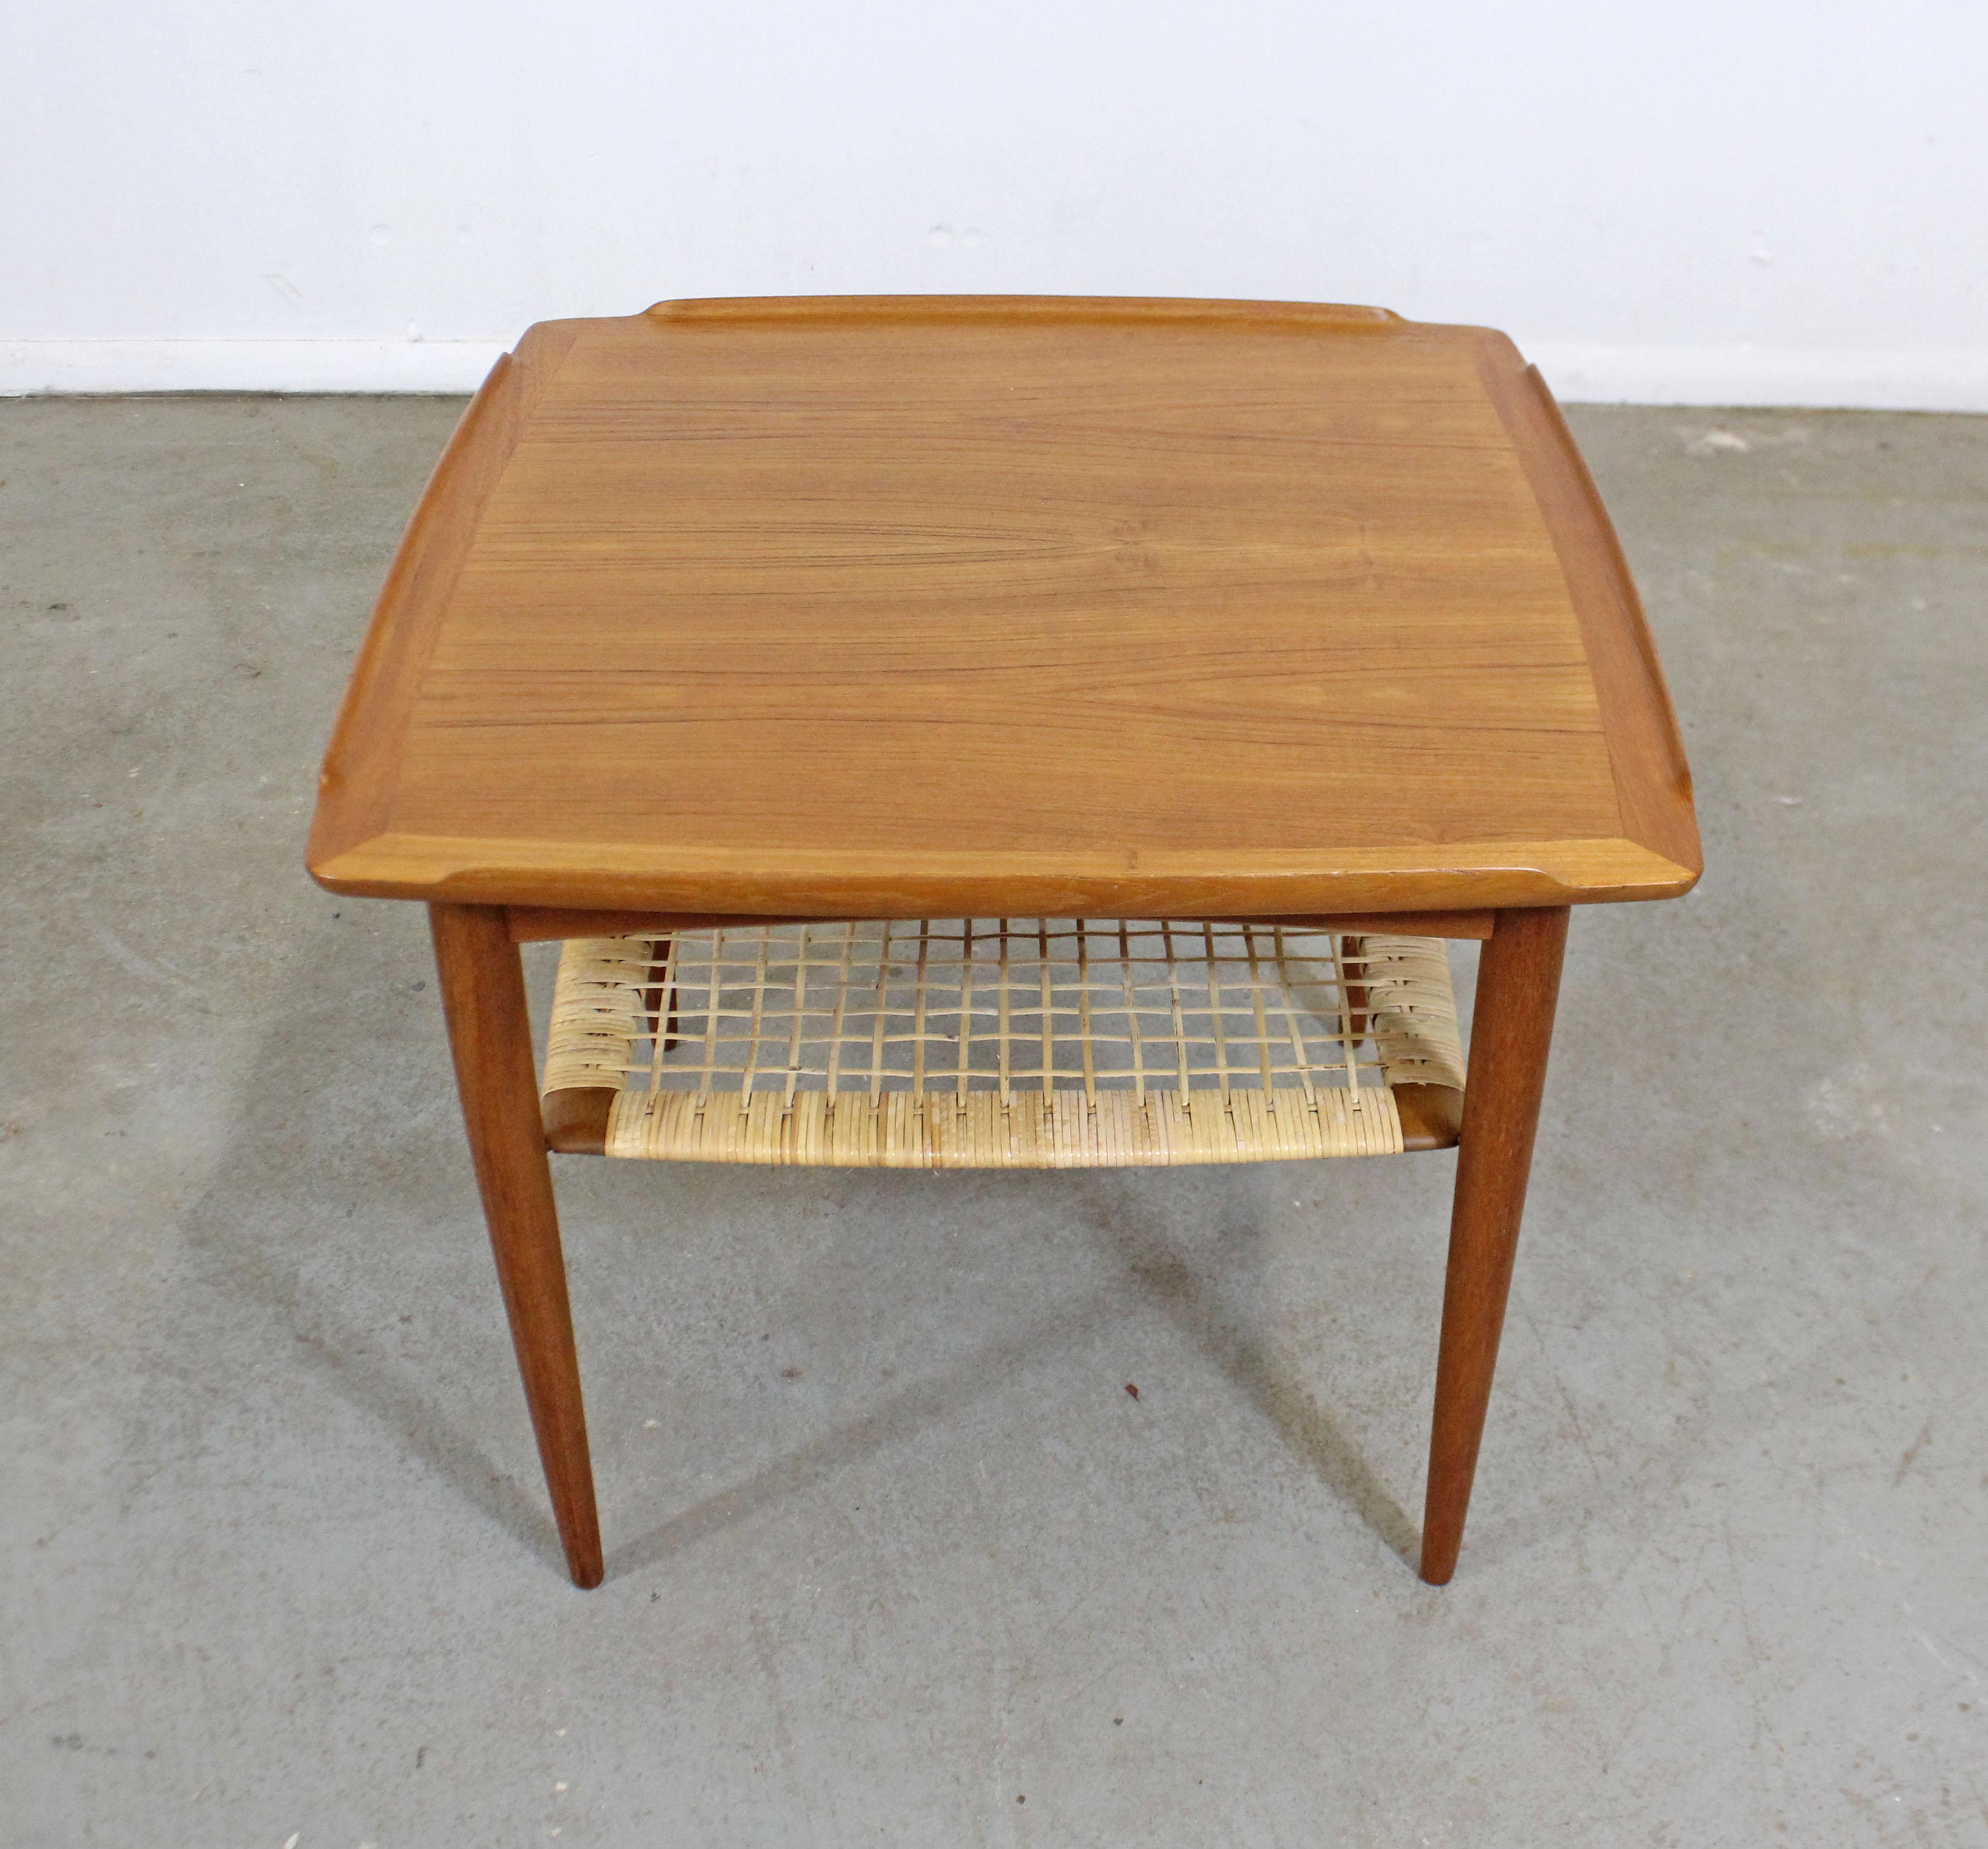 Mid-20th Century Danish Modern Poul Jensen for Selig Teak Caned Square Side Table